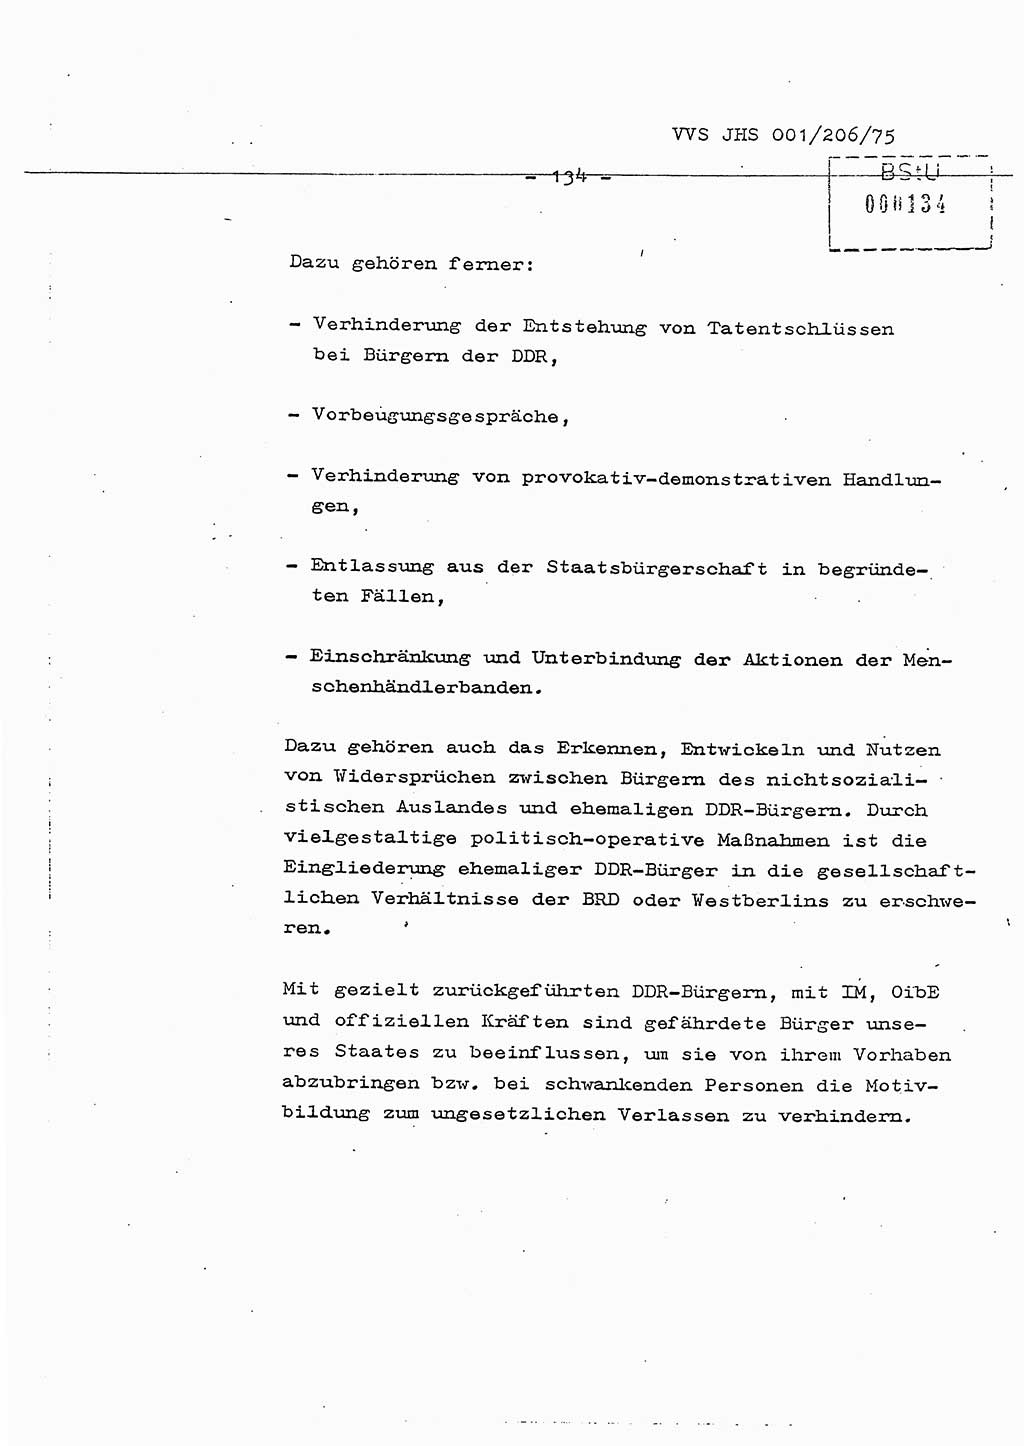 Dissertation Generalmajor Manfred Hummitzsch (Leiter der BV Leipzig), Generalmajor Heinz Fiedler (HA Ⅵ), Oberst Rolf Fister (HA Ⅸ), Ministerium für Staatssicherheit (MfS) [Deutsche Demokratische Republik (DDR)], Juristische Hochschule (JHS), Vertrauliche Verschlußsache (VVS) 001-206/75, Potsdam 1975, Seite 134 (Diss. MfS DDR JHS VVS 001-206/75 1975, S. 134)